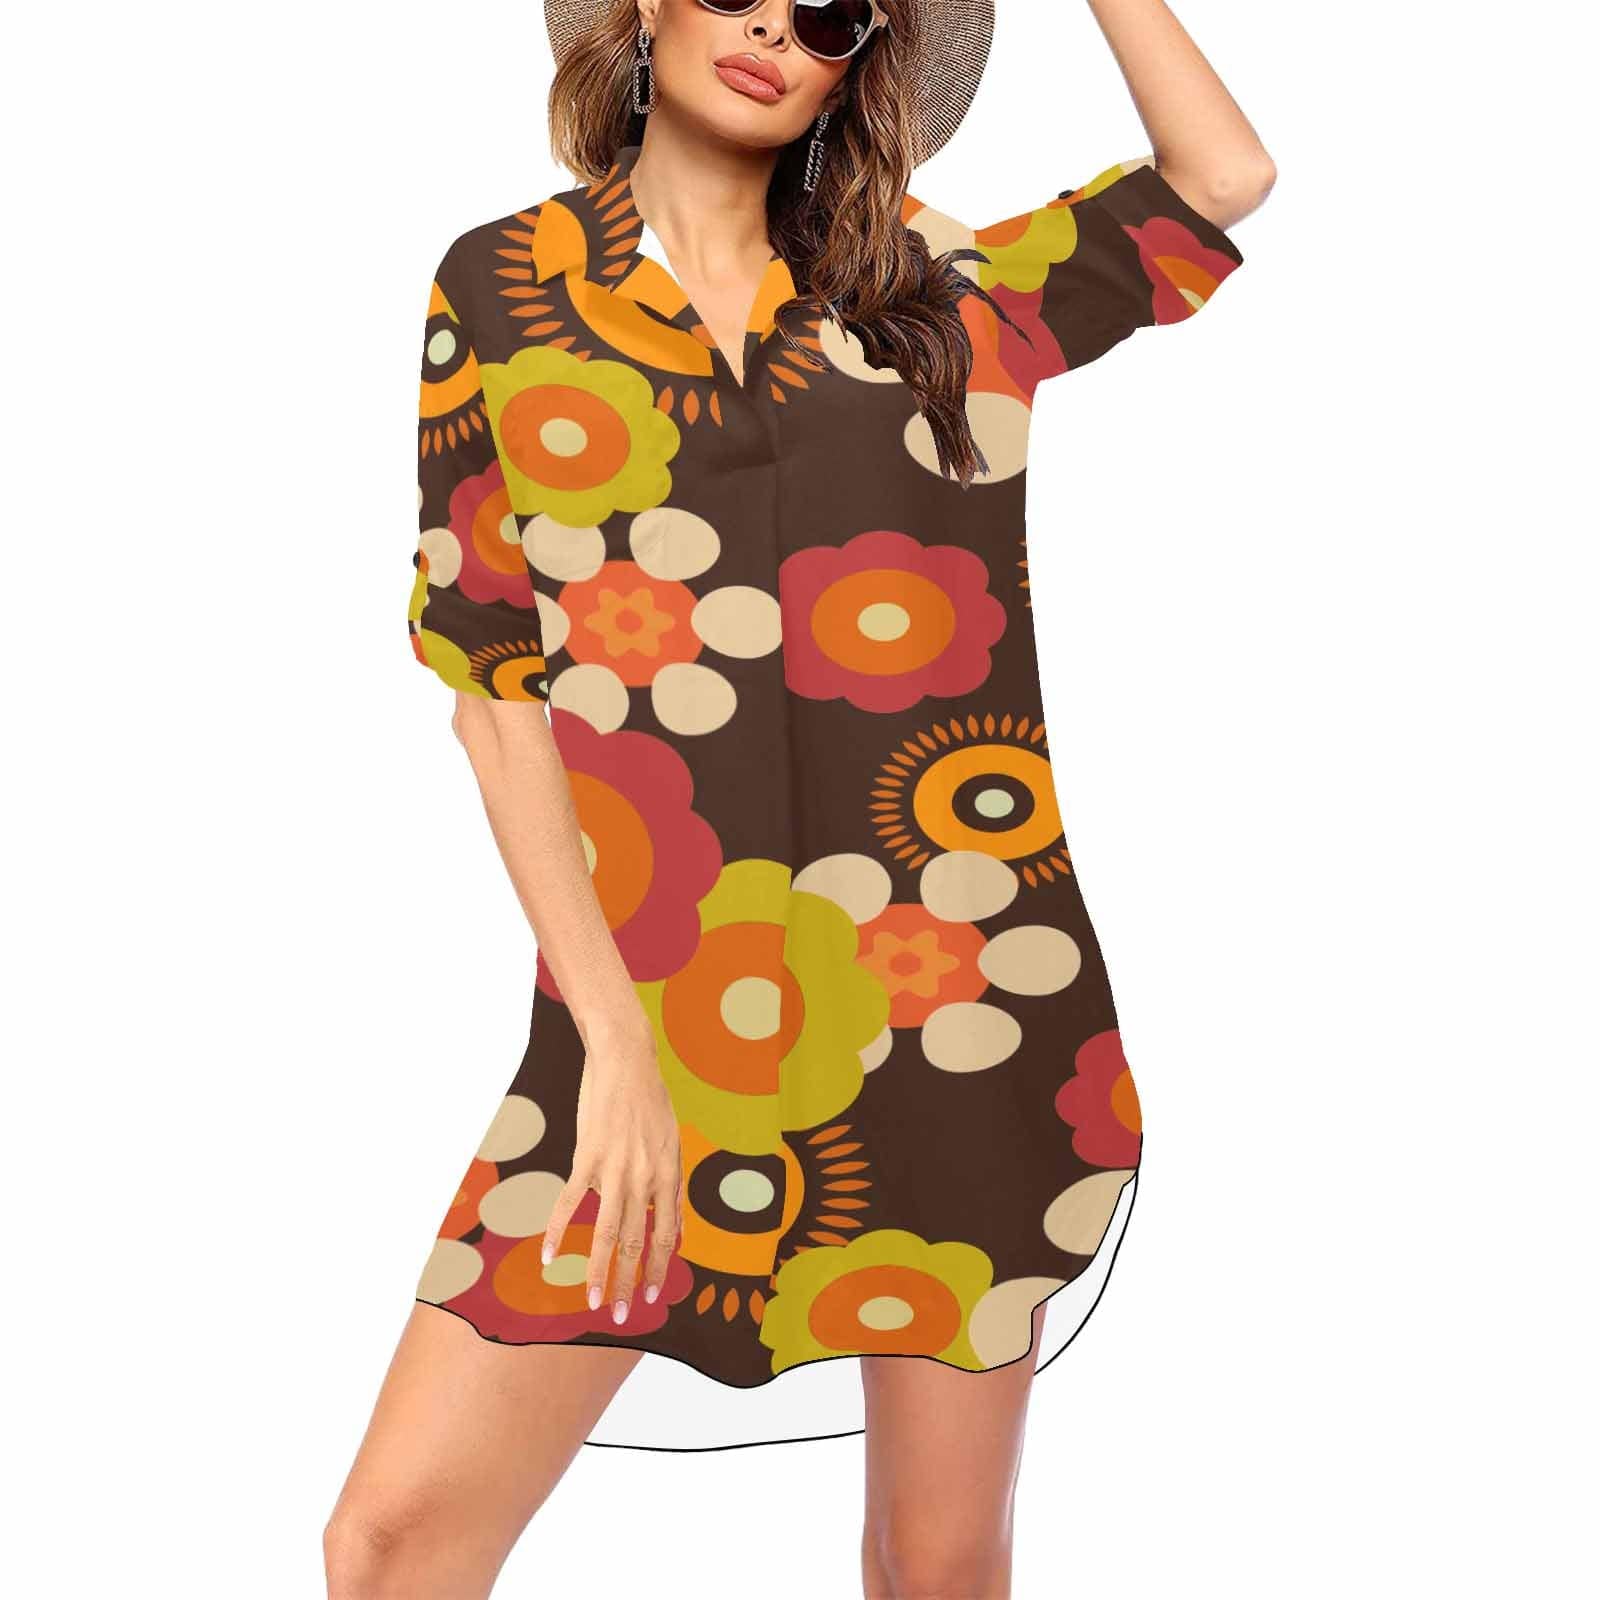 Kate McEnroe New York Retro Funky Groovy Hippie Boho Shirt Dress Cover UpDressesDG1492394DXH9080D